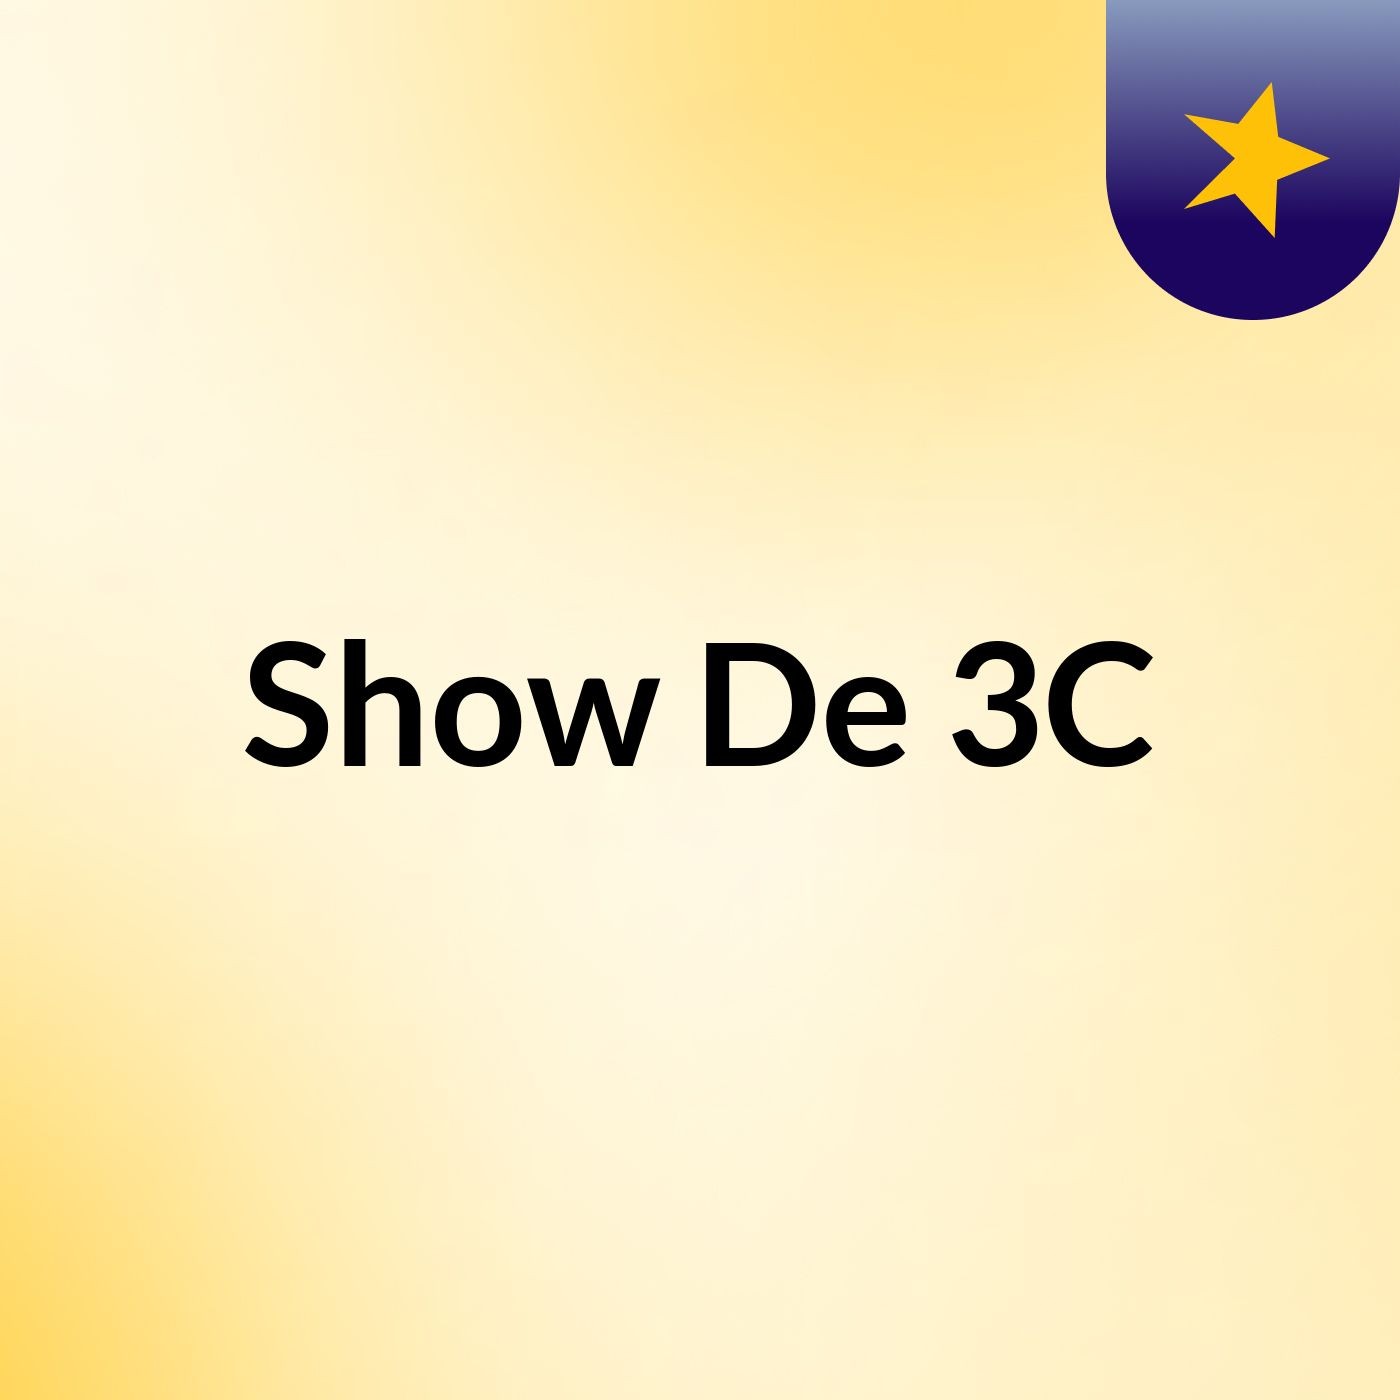 Show De 3C